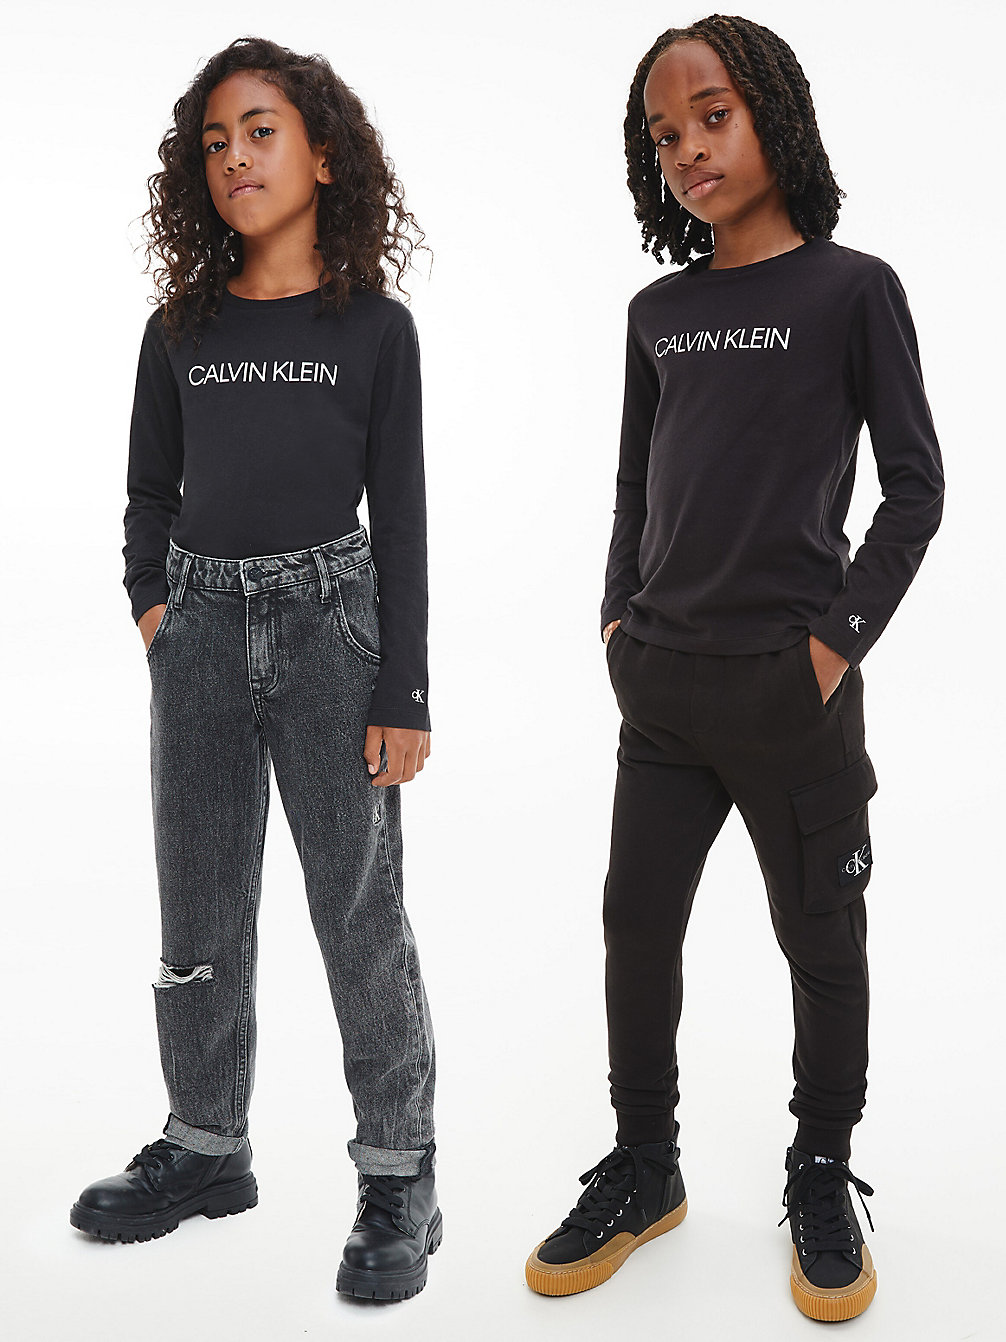 CK BLACK > Unisex T-Shirt Met Lange Mouwen > undefined kids unisex - Calvin Klein